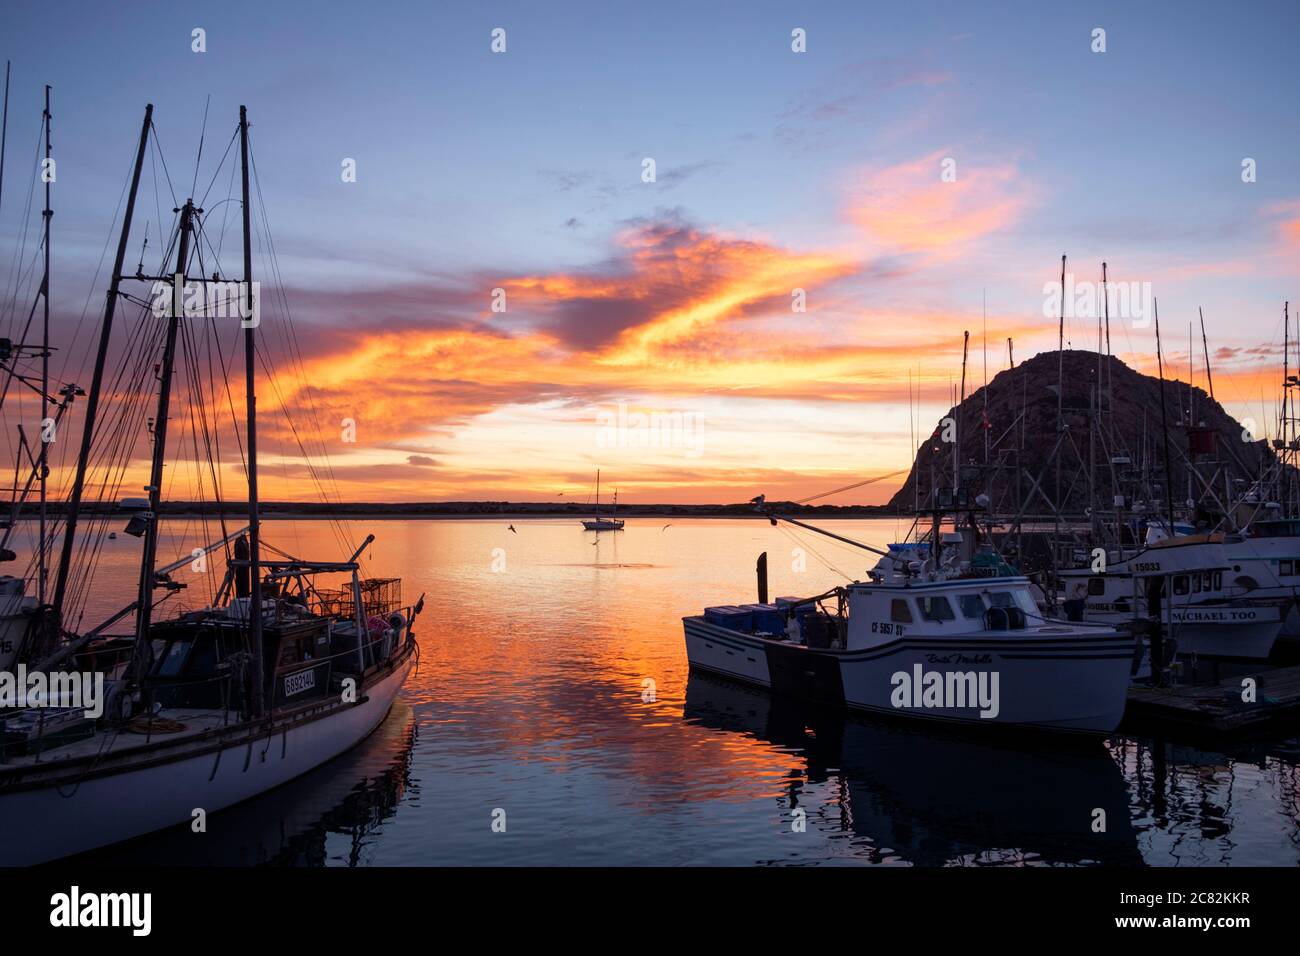 Tramonto fiery riflesso nella baia di Morro tra le barche da pesca in una serata tranquilla Foto Stock